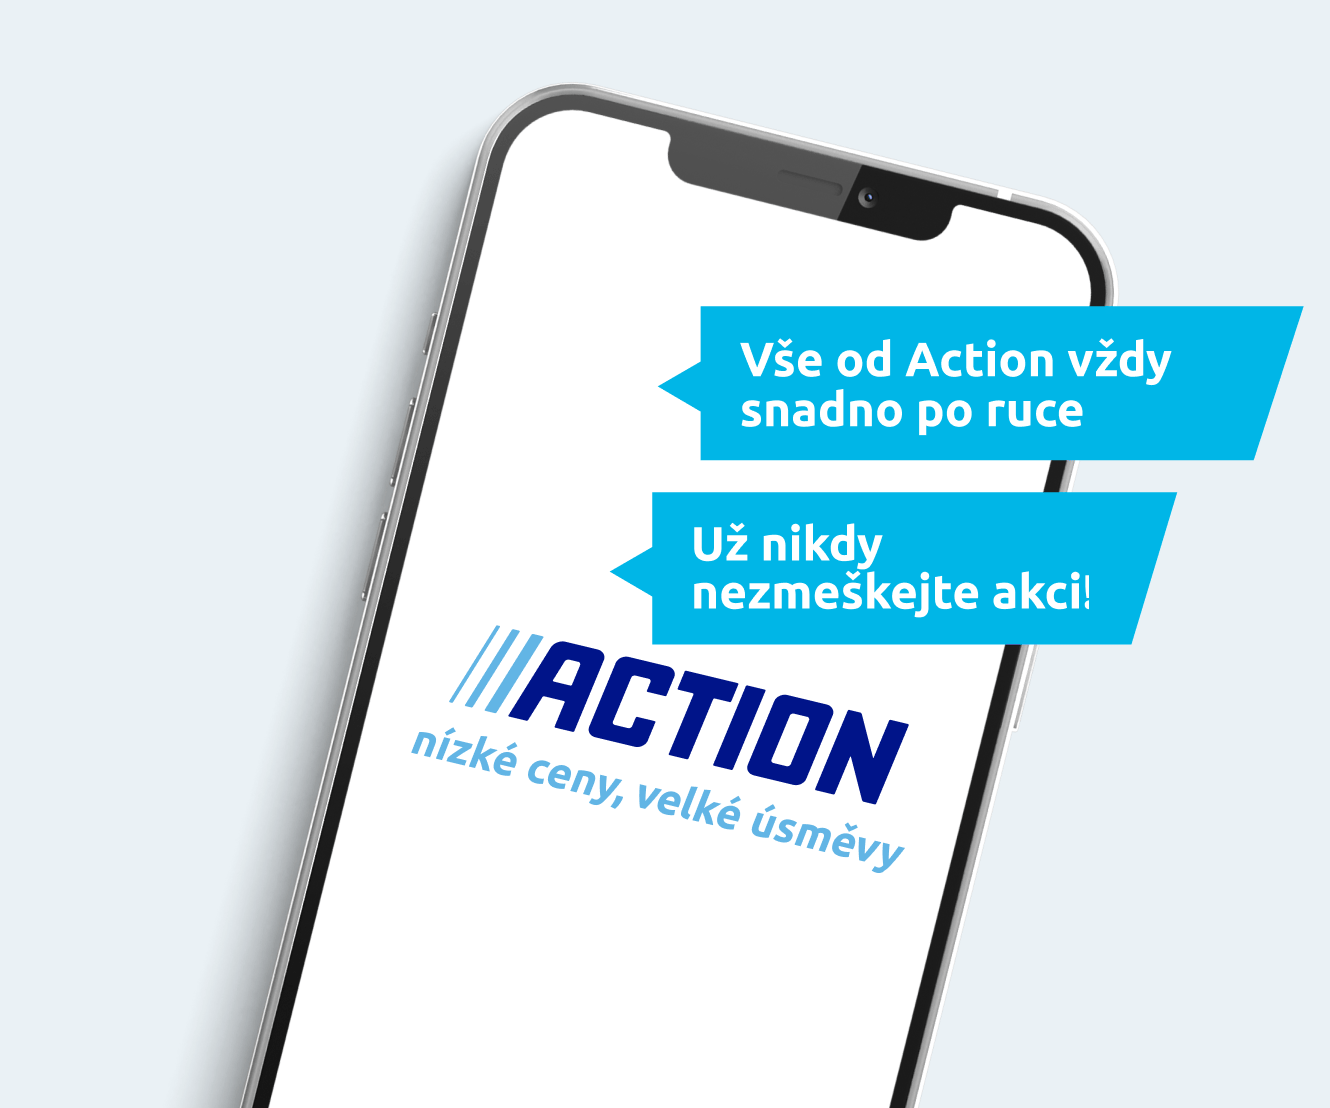 Stáhněte si aplikaci Action